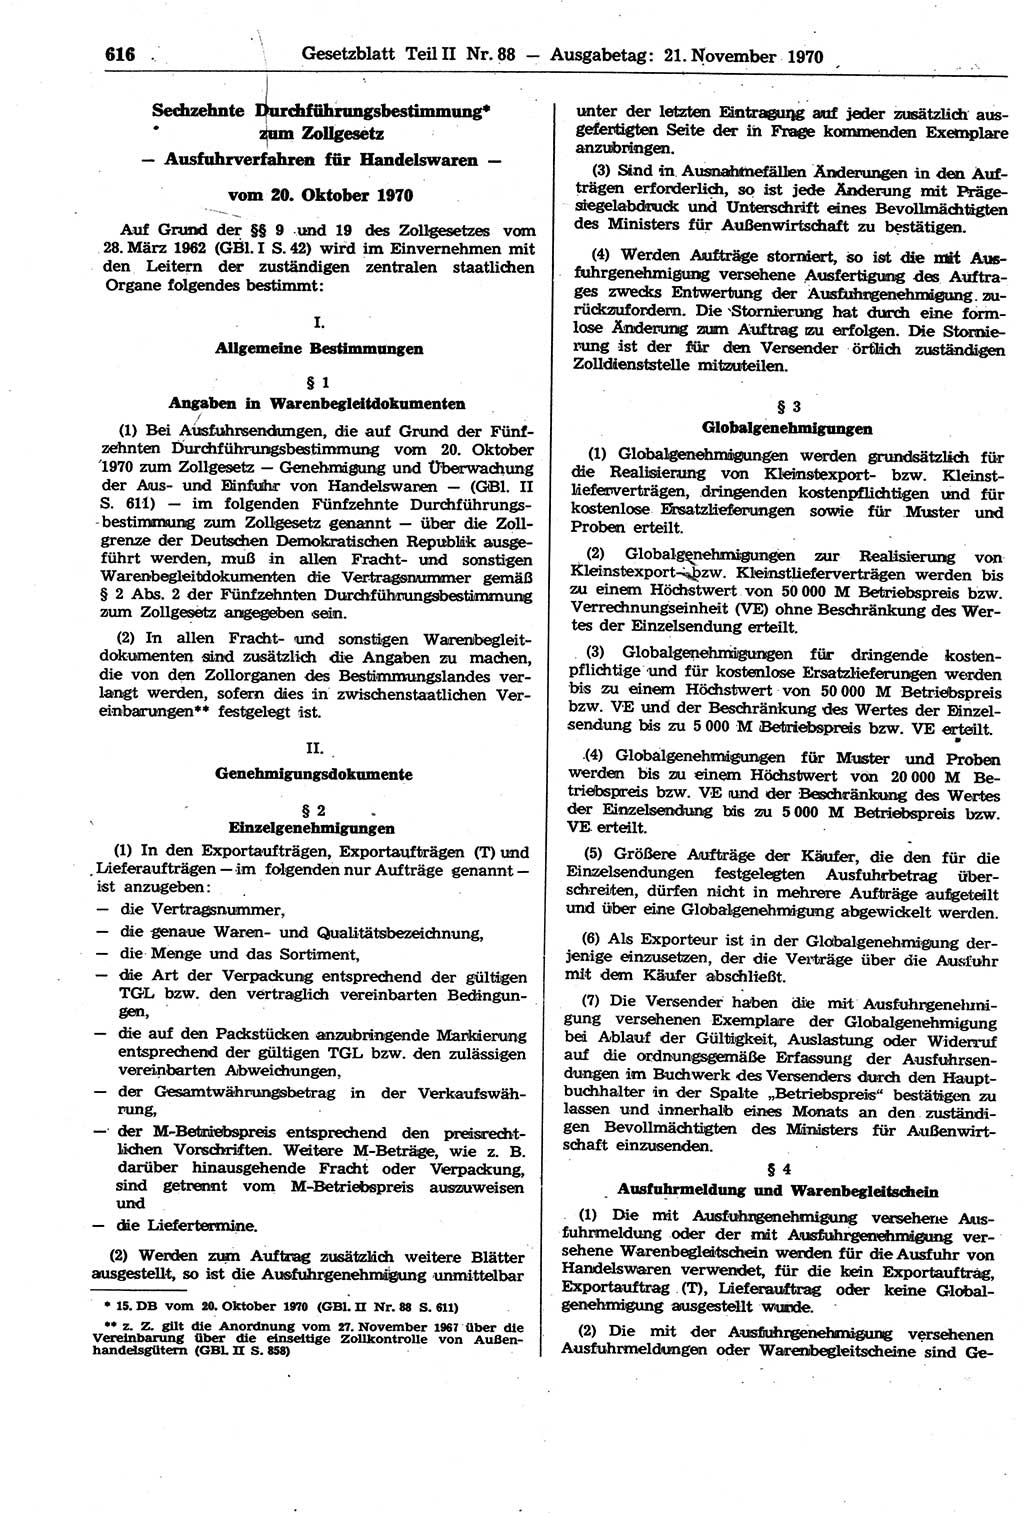 Gesetzblatt (GBl.) der Deutschen Demokratischen Republik (DDR) Teil ⅠⅠ 1970, Seite 616 (GBl. DDR ⅠⅠ 1970, S. 616)